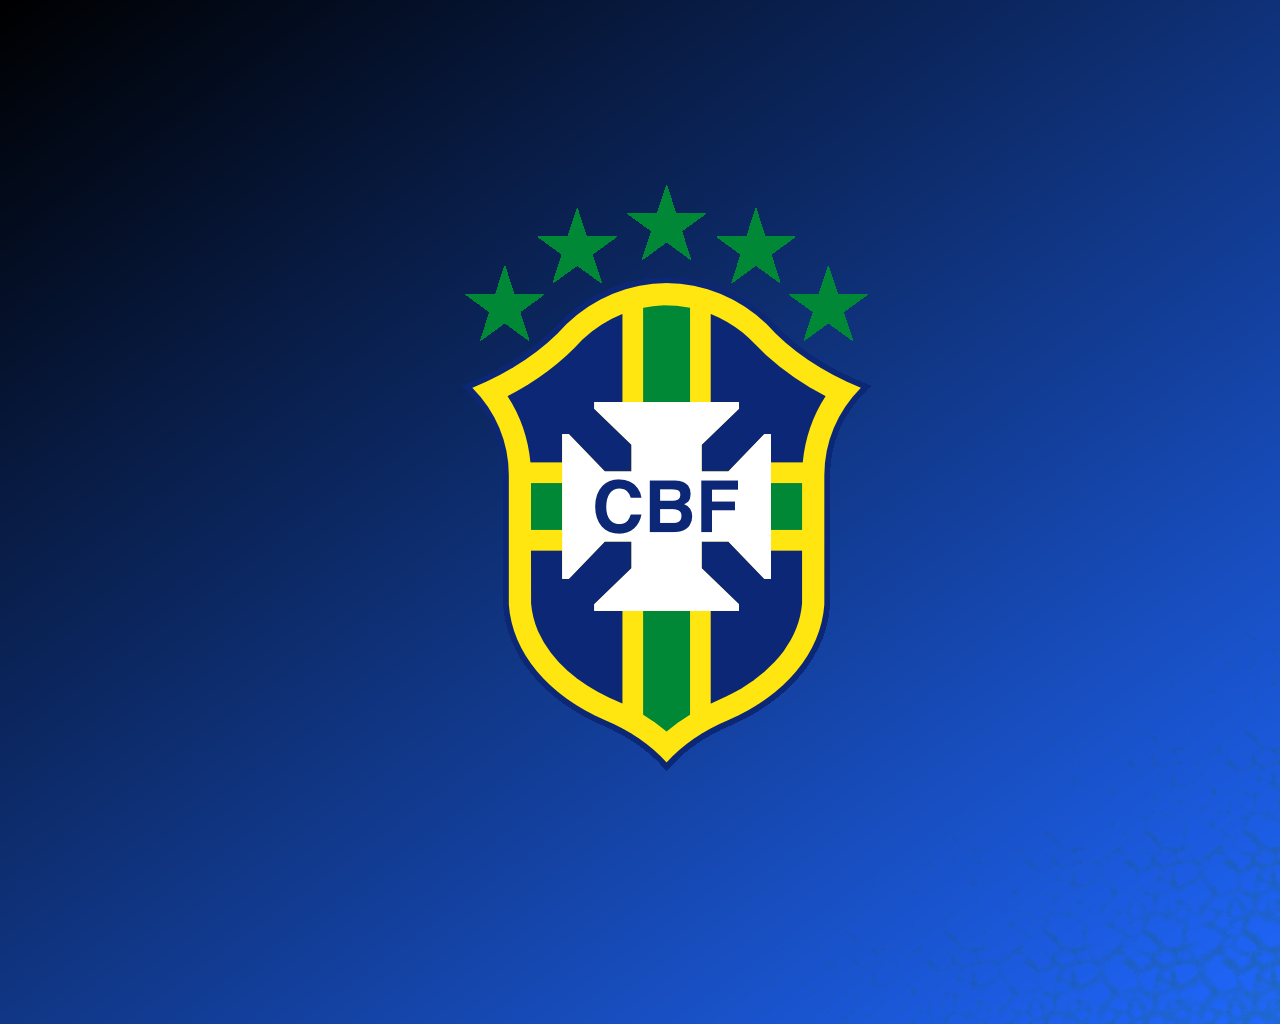 Brazil Soccer Wallpaper